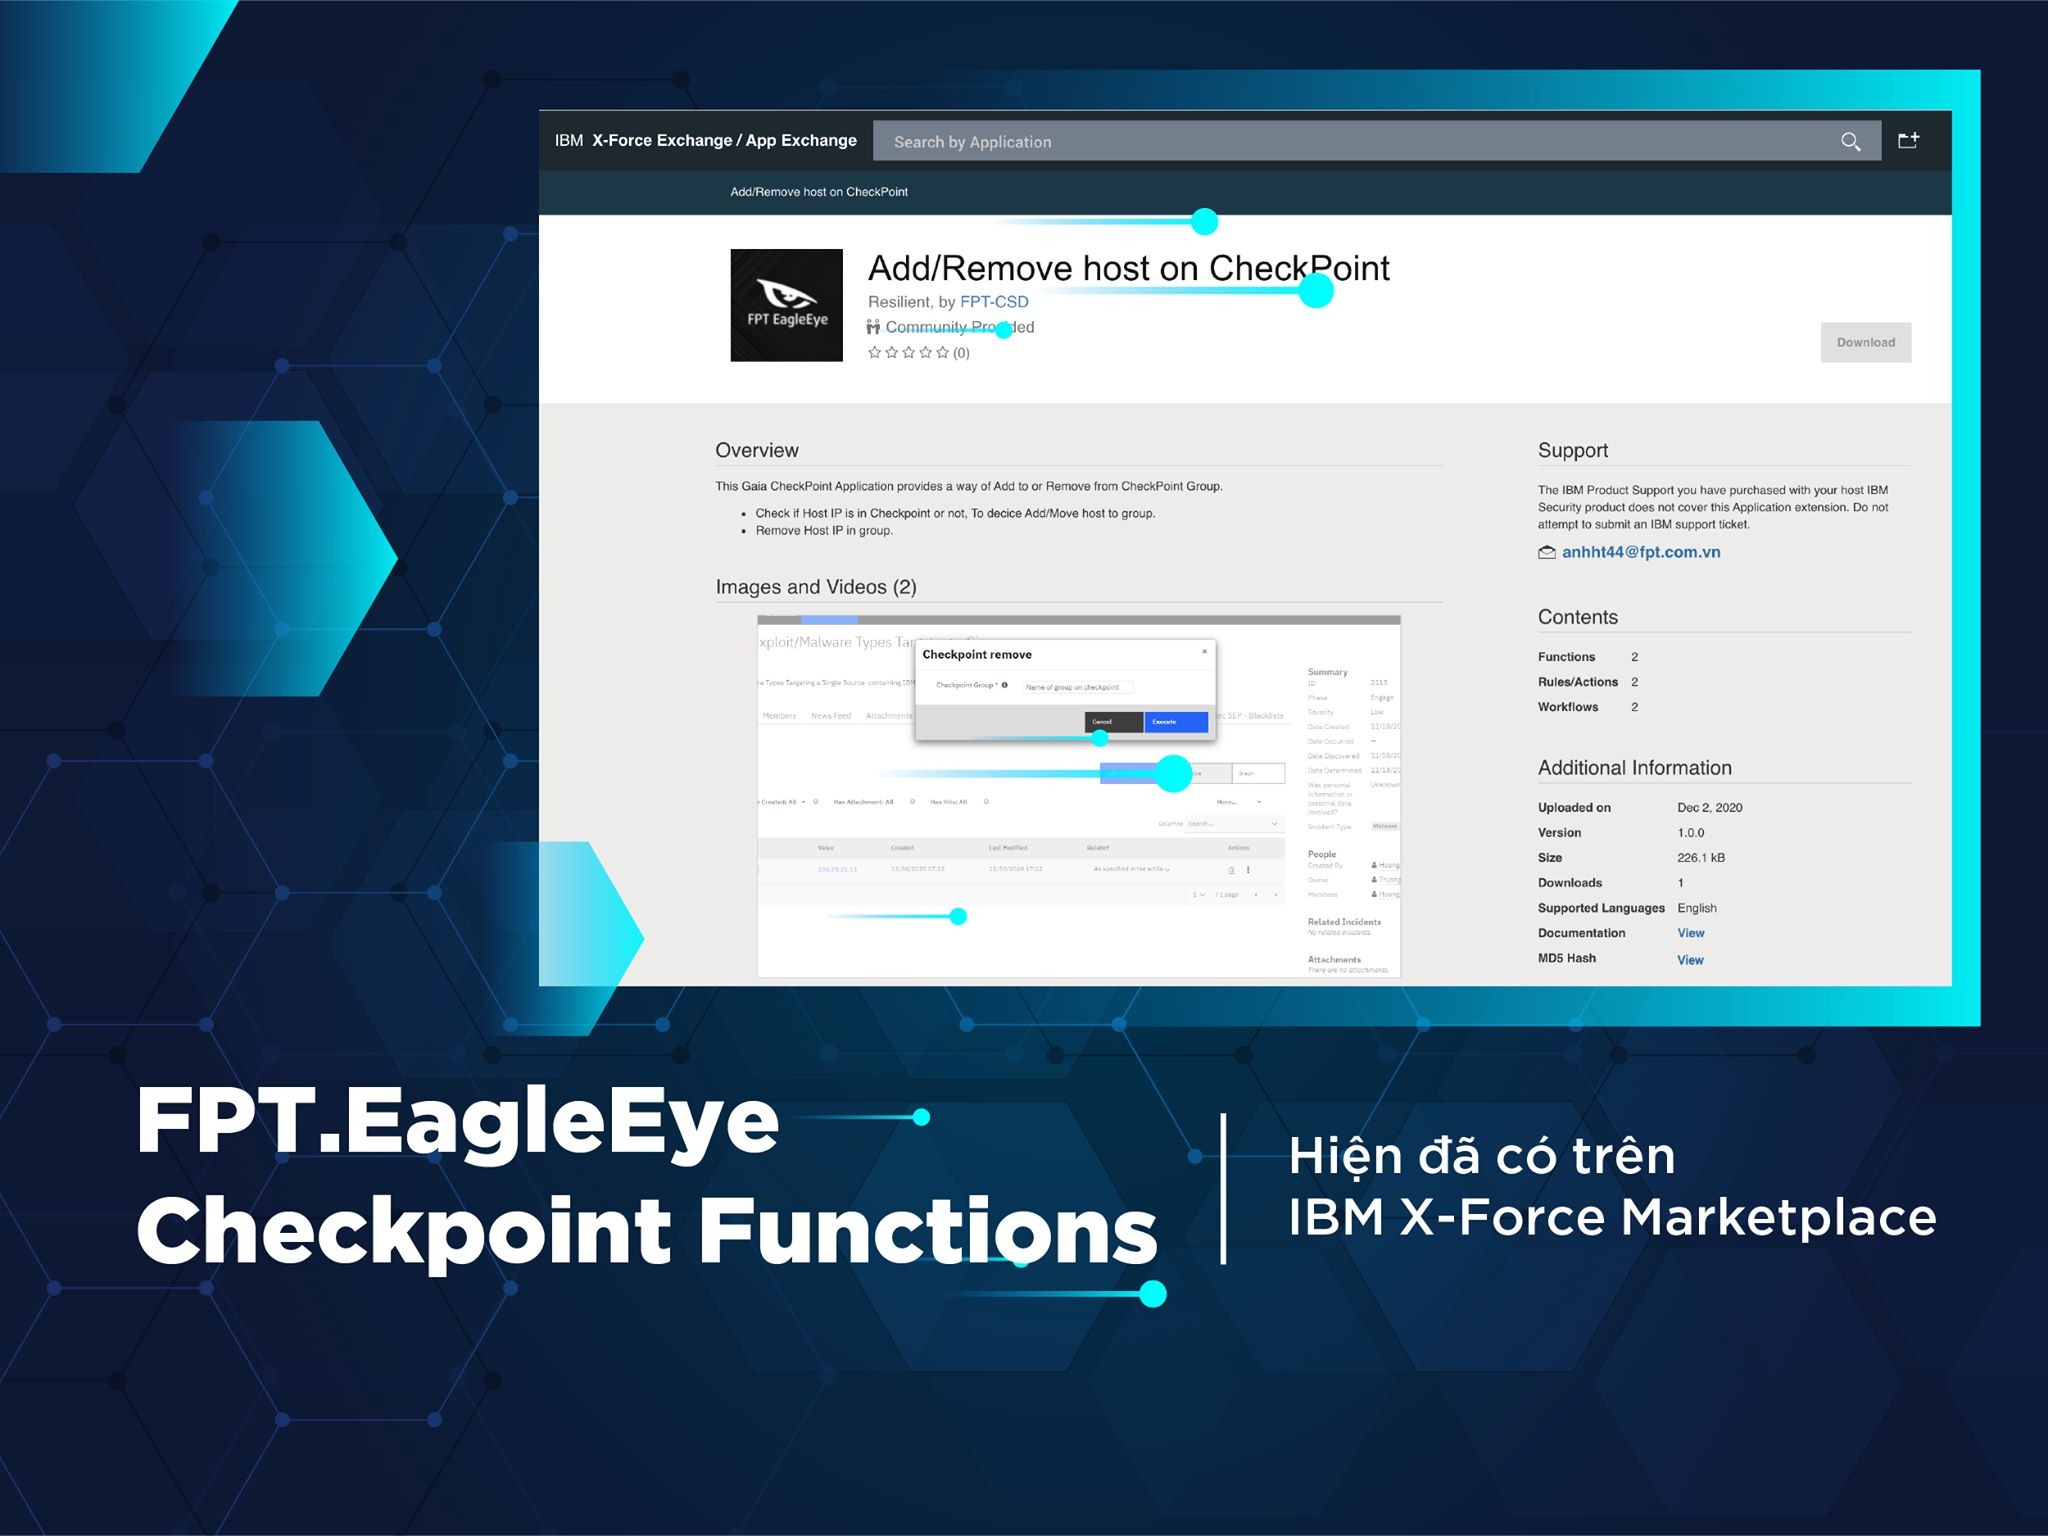 FPT.EagleEye Checkpoint Functions là Sản phẩm bảo mật đầu tiên của Việt Nam được đăng tải trên IBM X-Force Marketplace